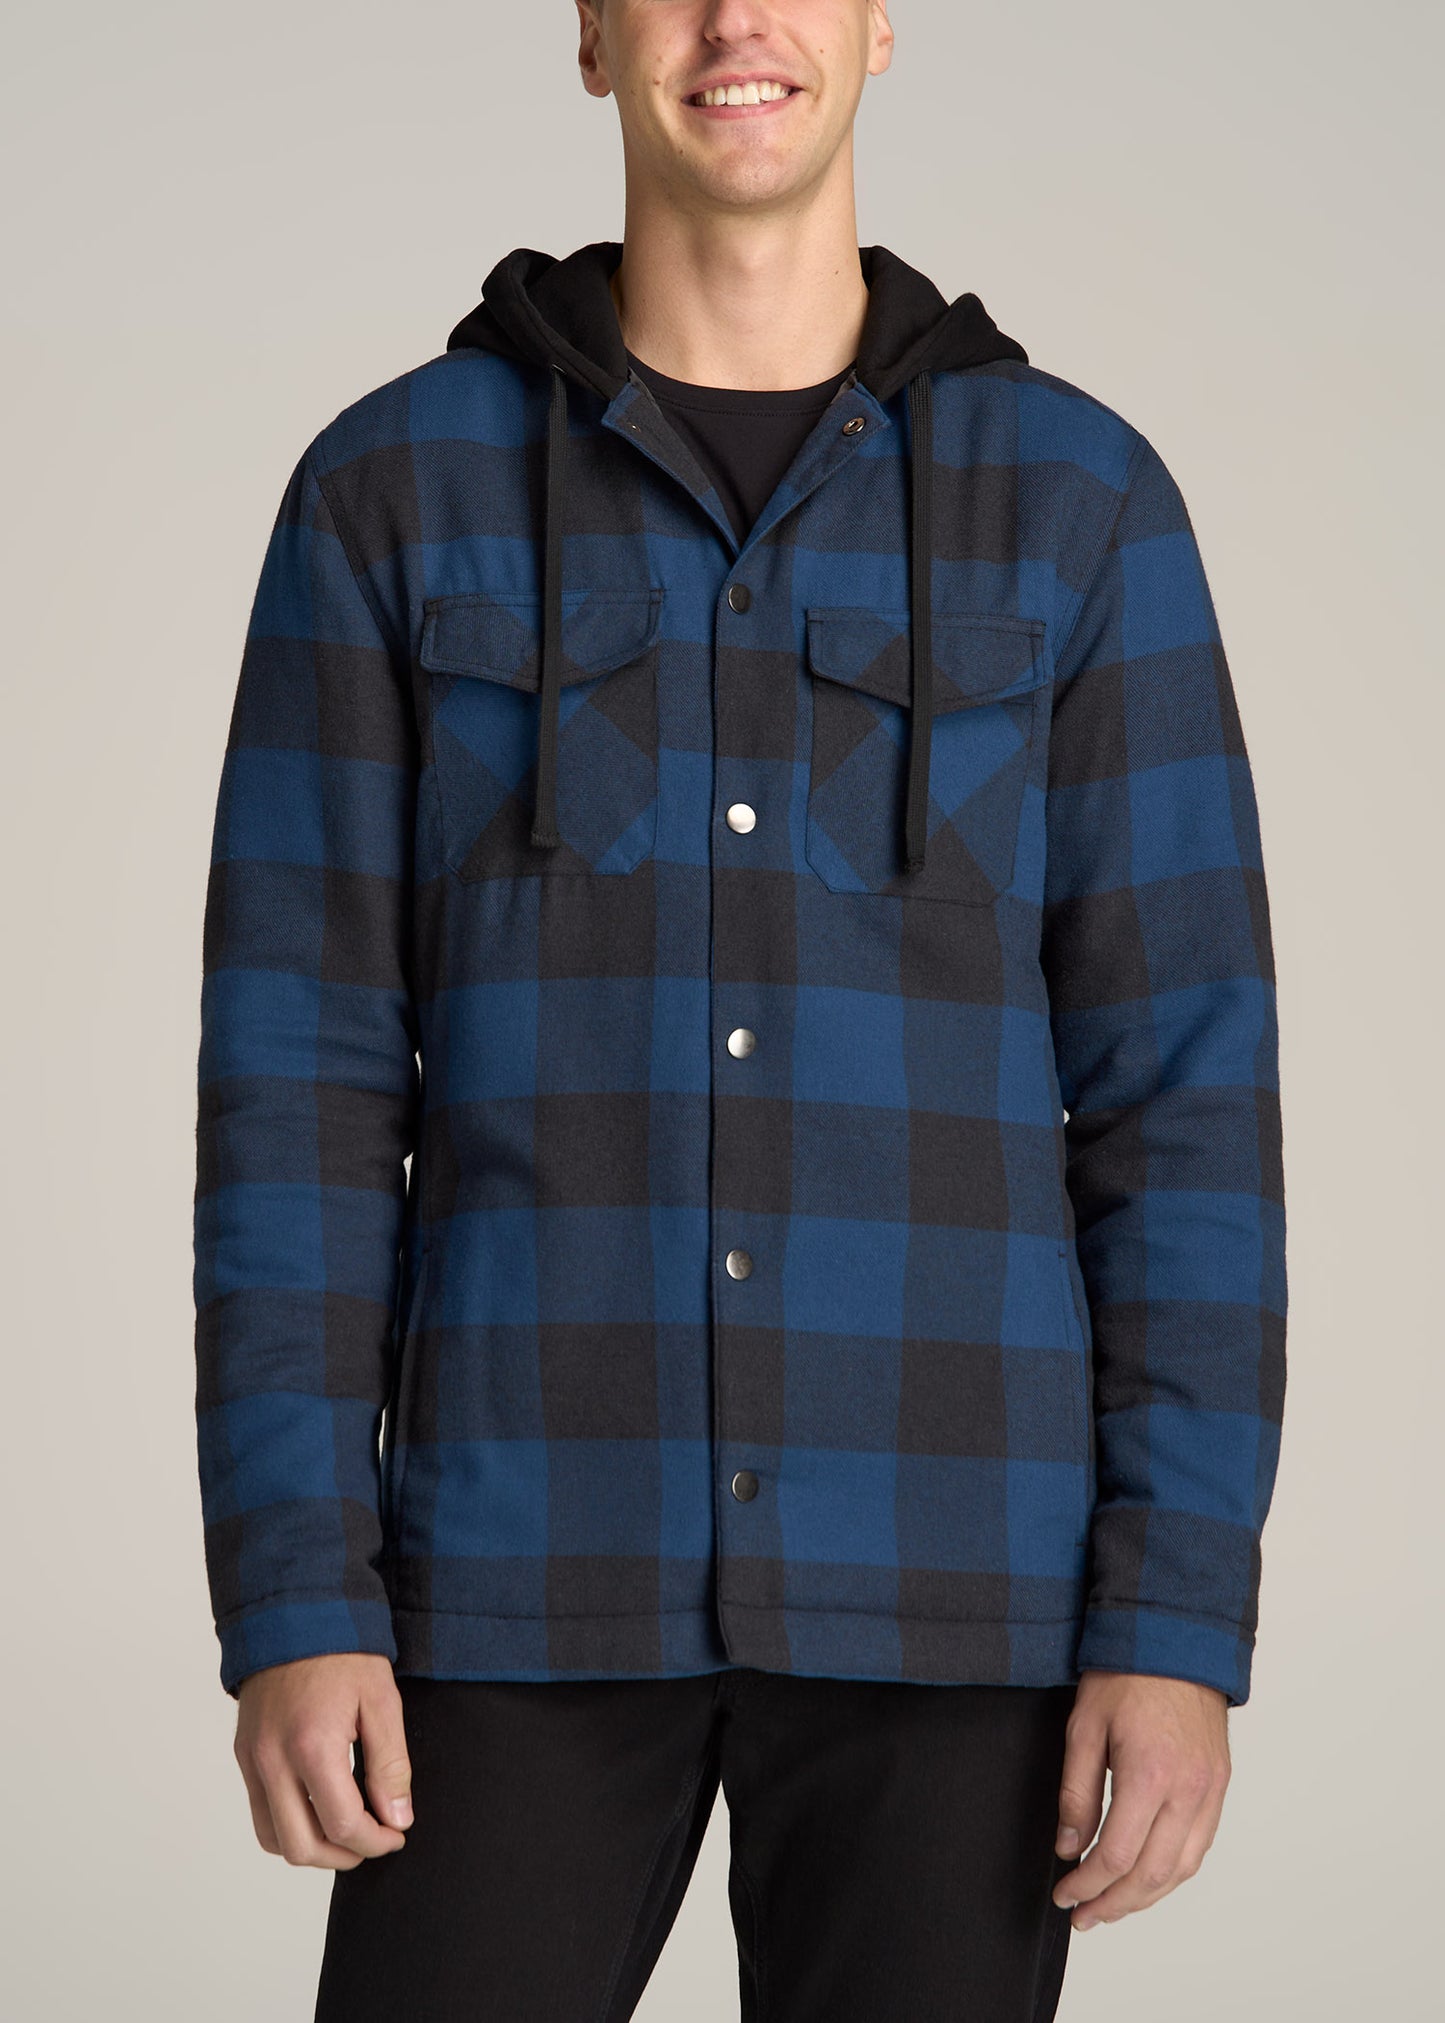 Blue Hooded Flannel Shirt Jacket for Men